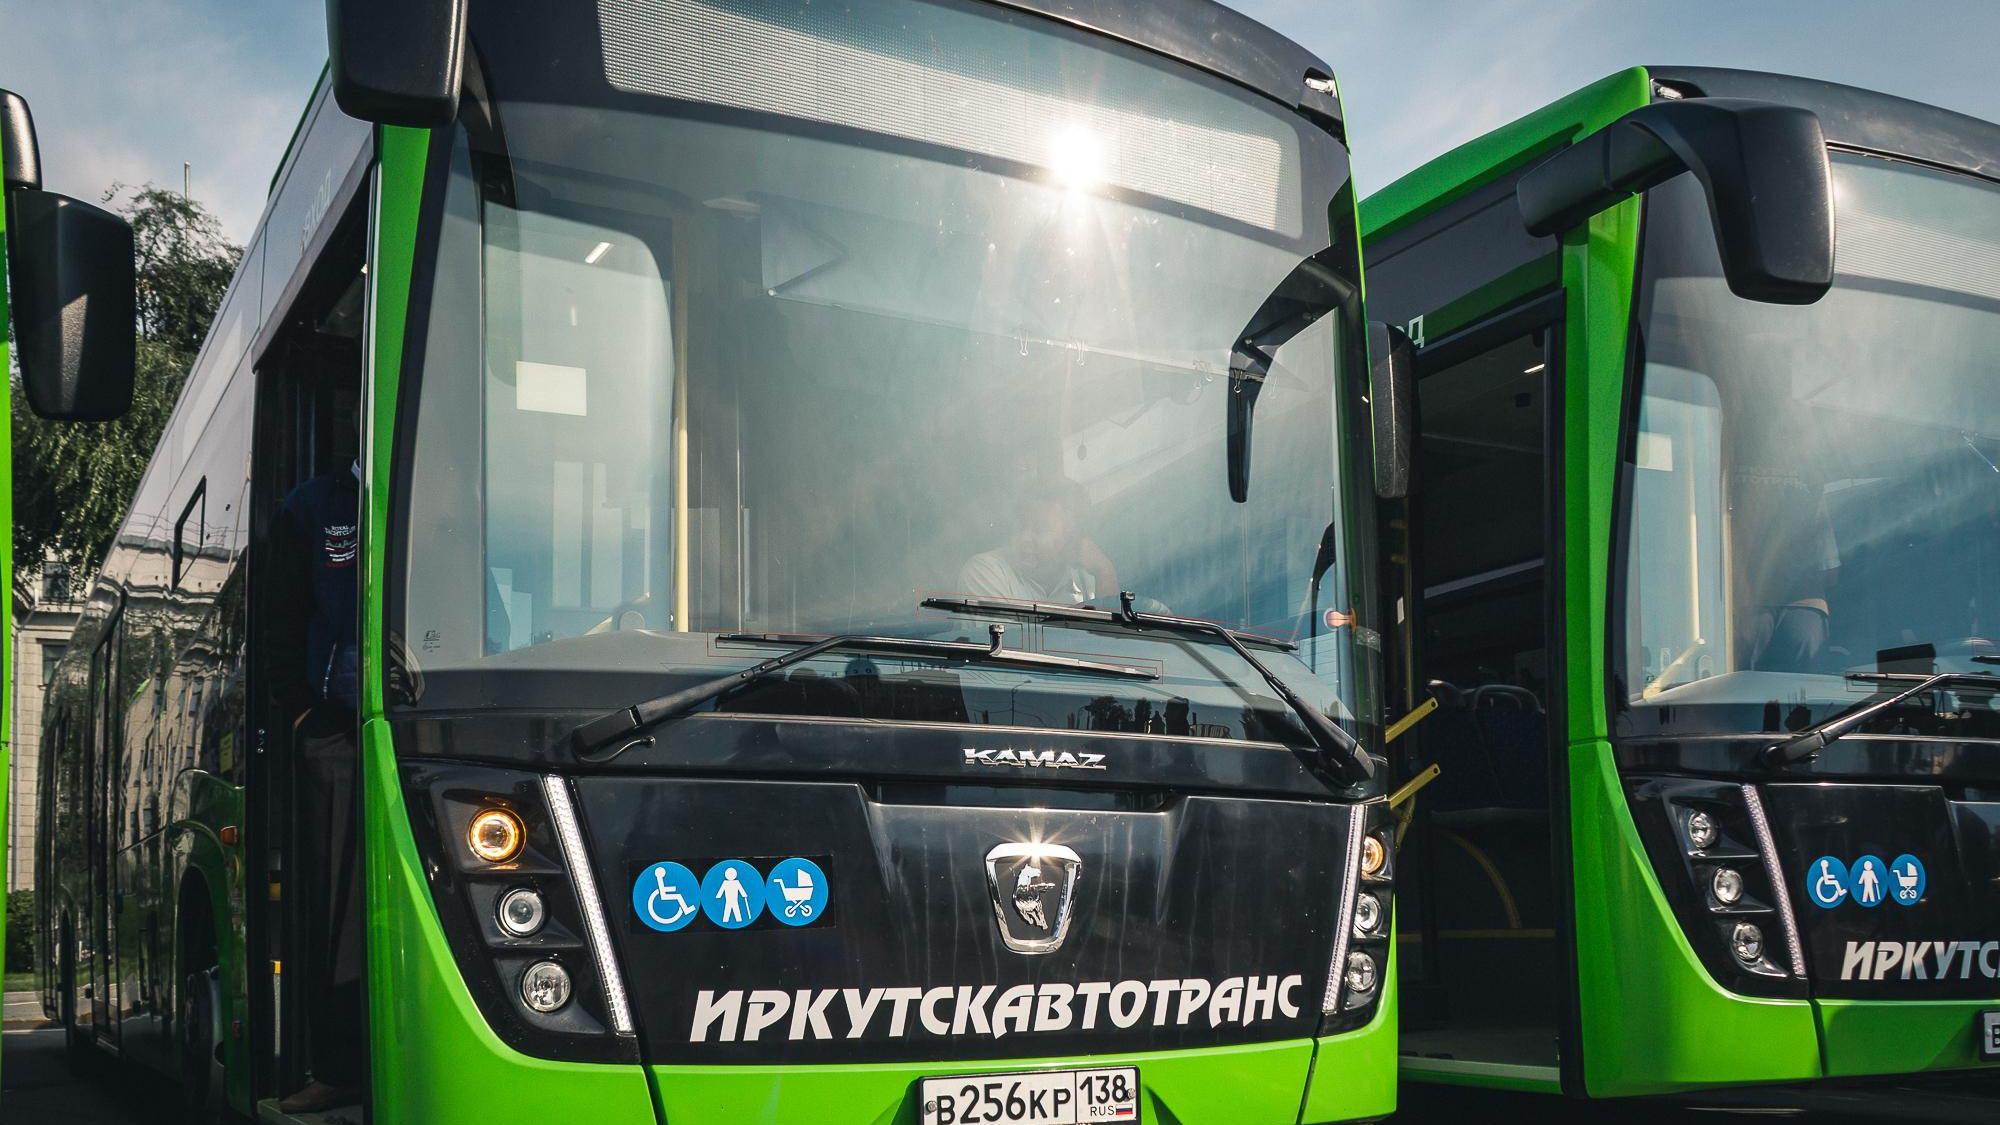 «Иркутскавтотранс» планируют приватизировать. Из-за этого могут подняться цены на проезд